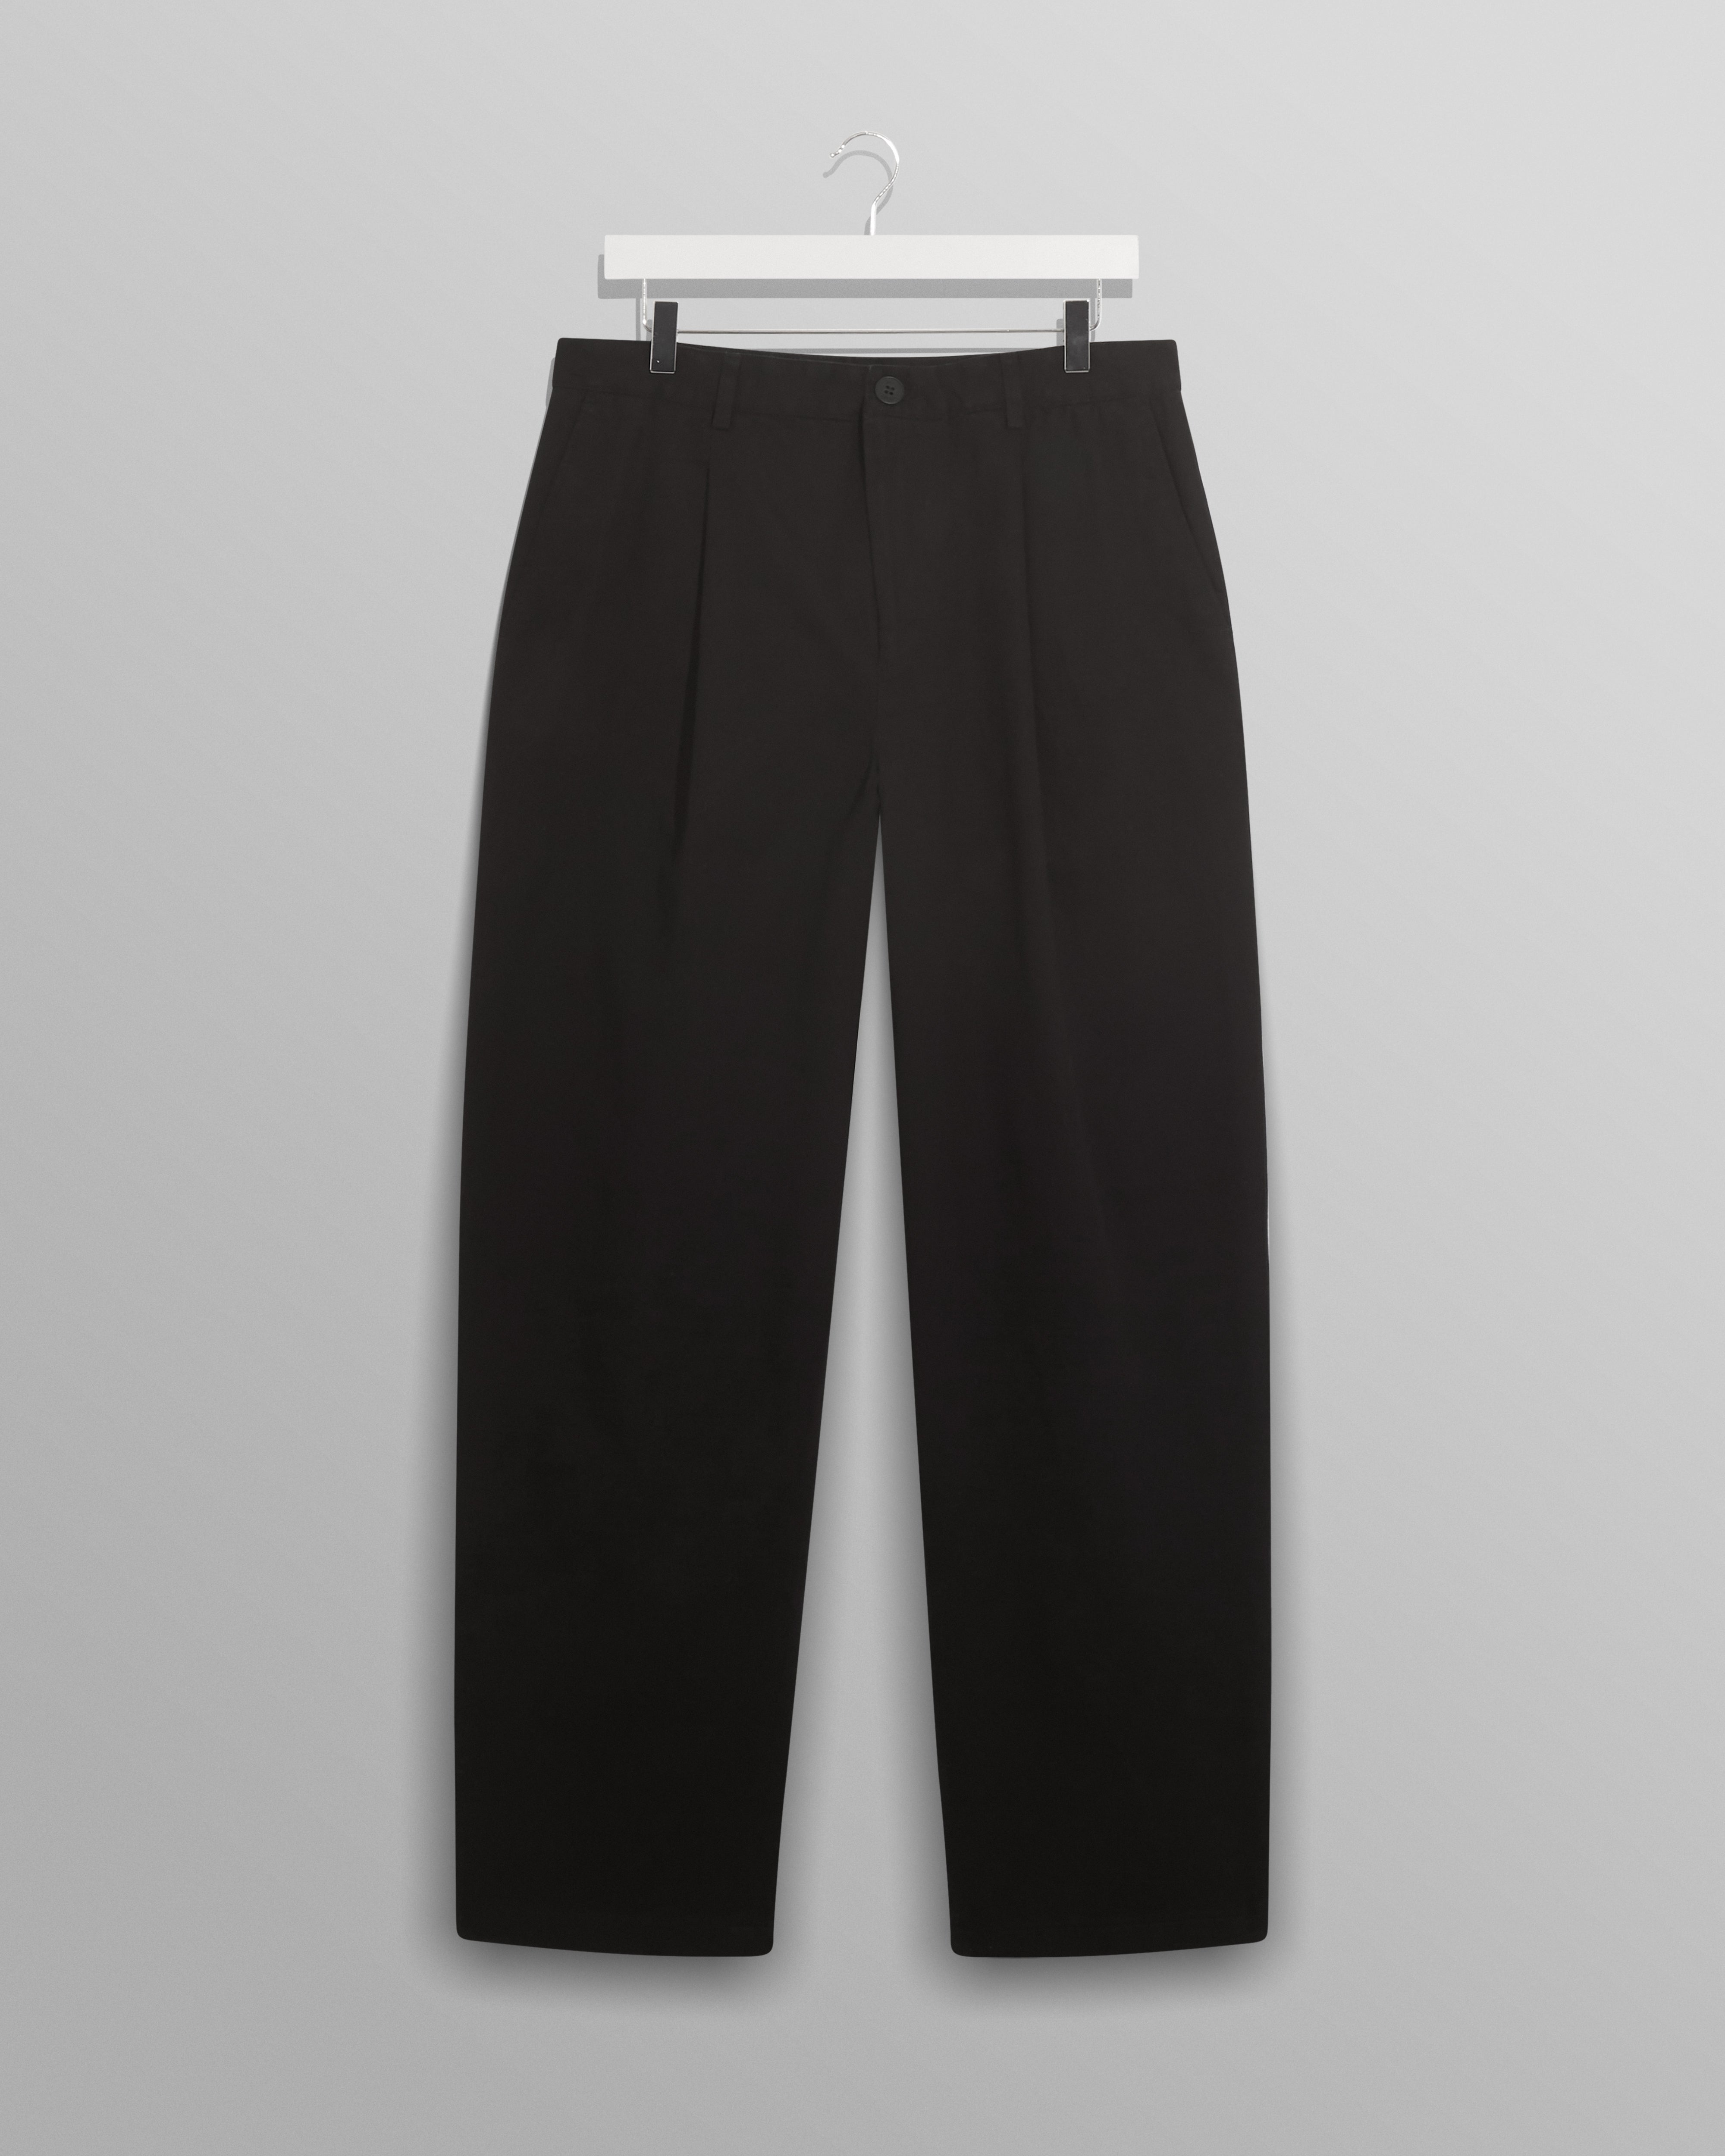 Milo Trousers Black Cotton Twill / 38